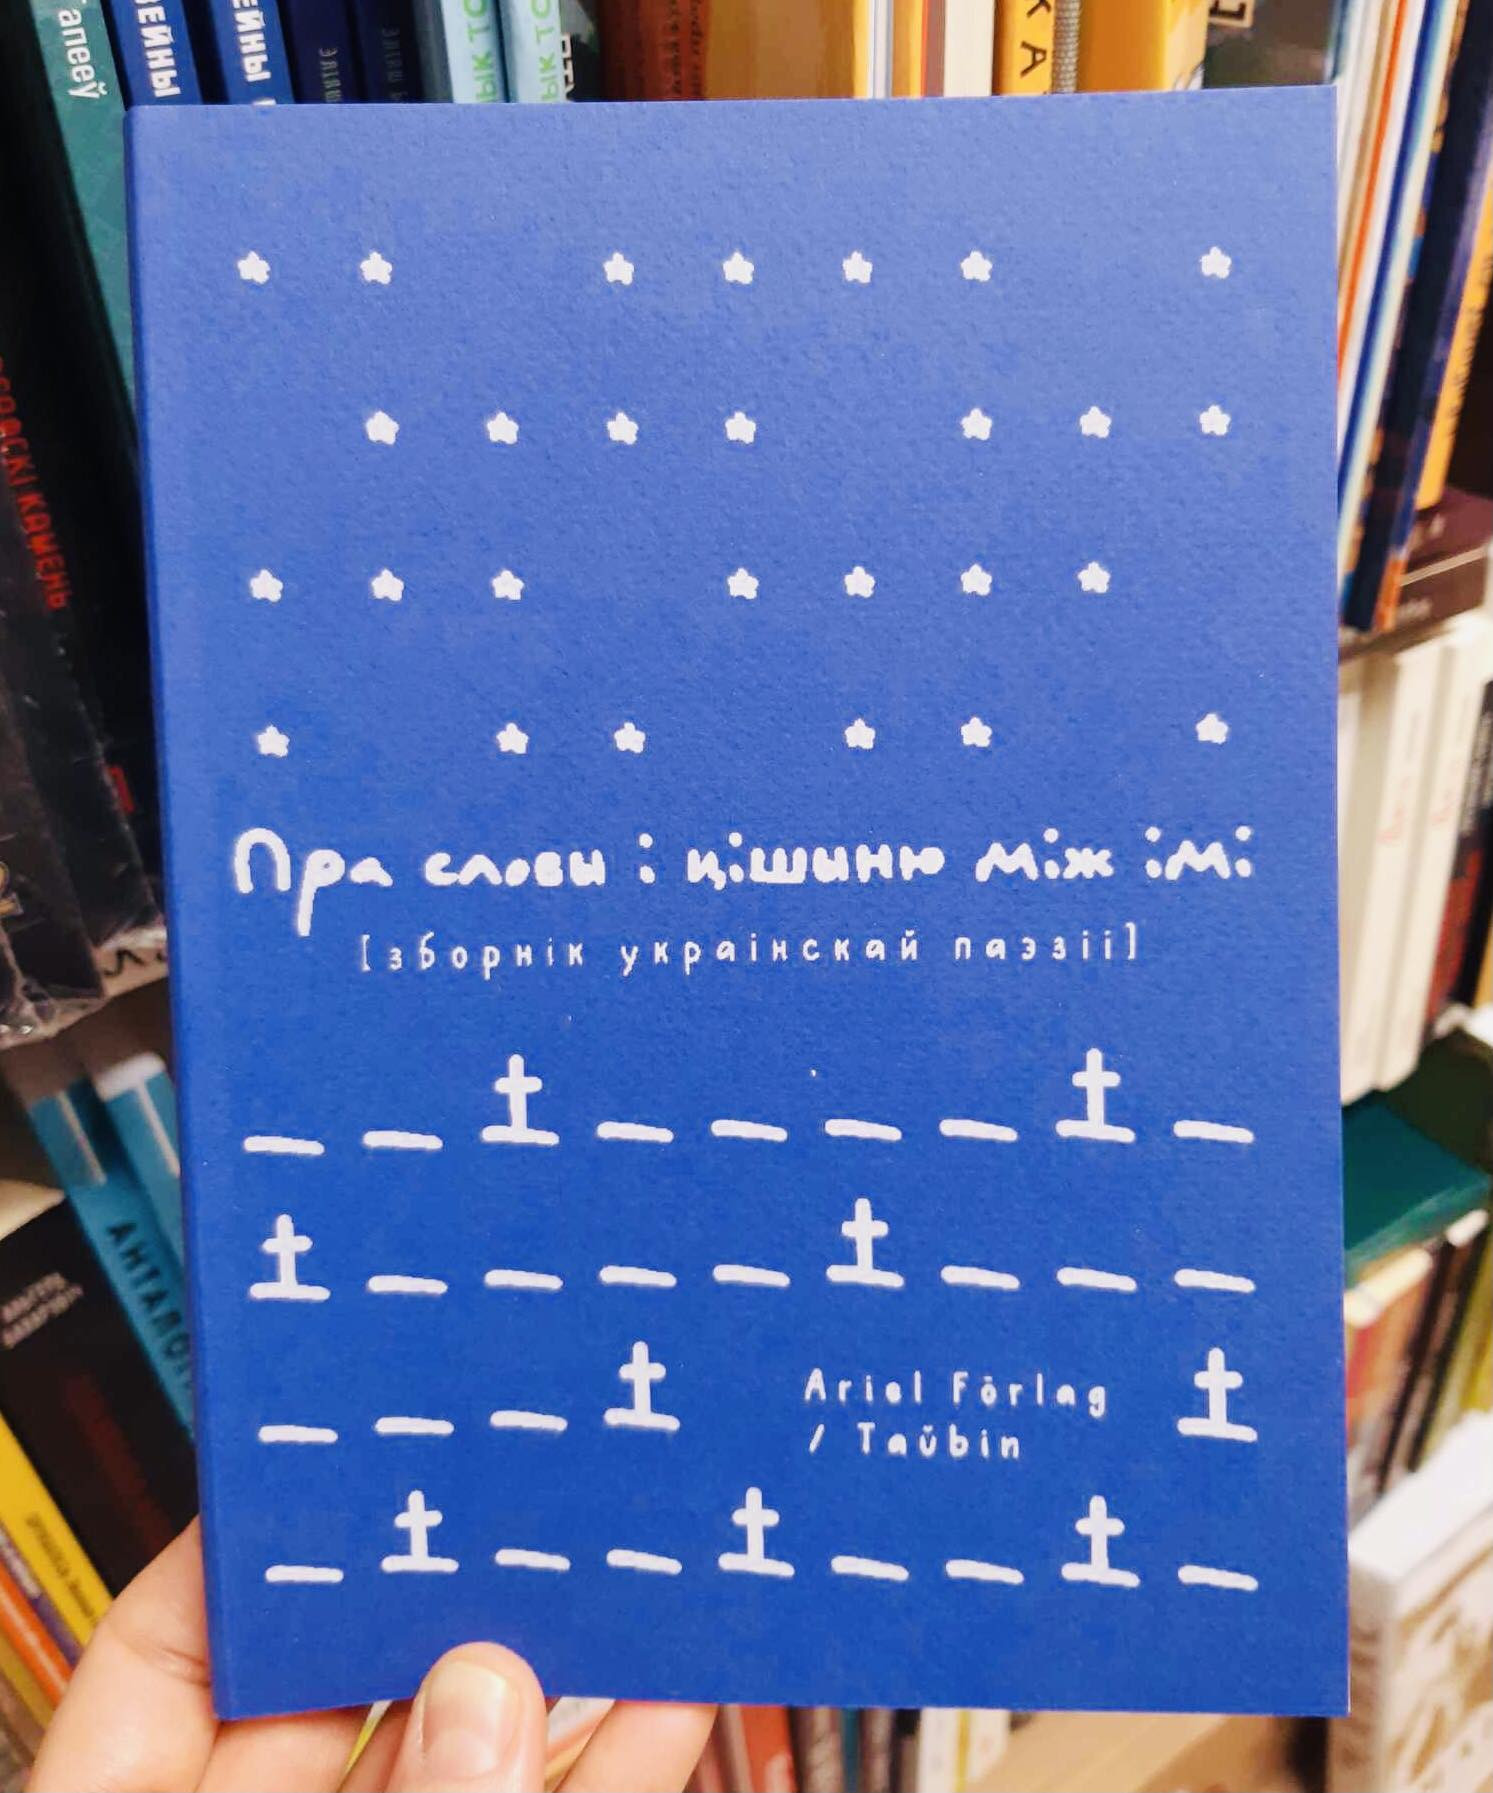 Прэзентацыя зборніка сучаснай укрaiнскай паэзіі «Пра словы і цішыню між імі»